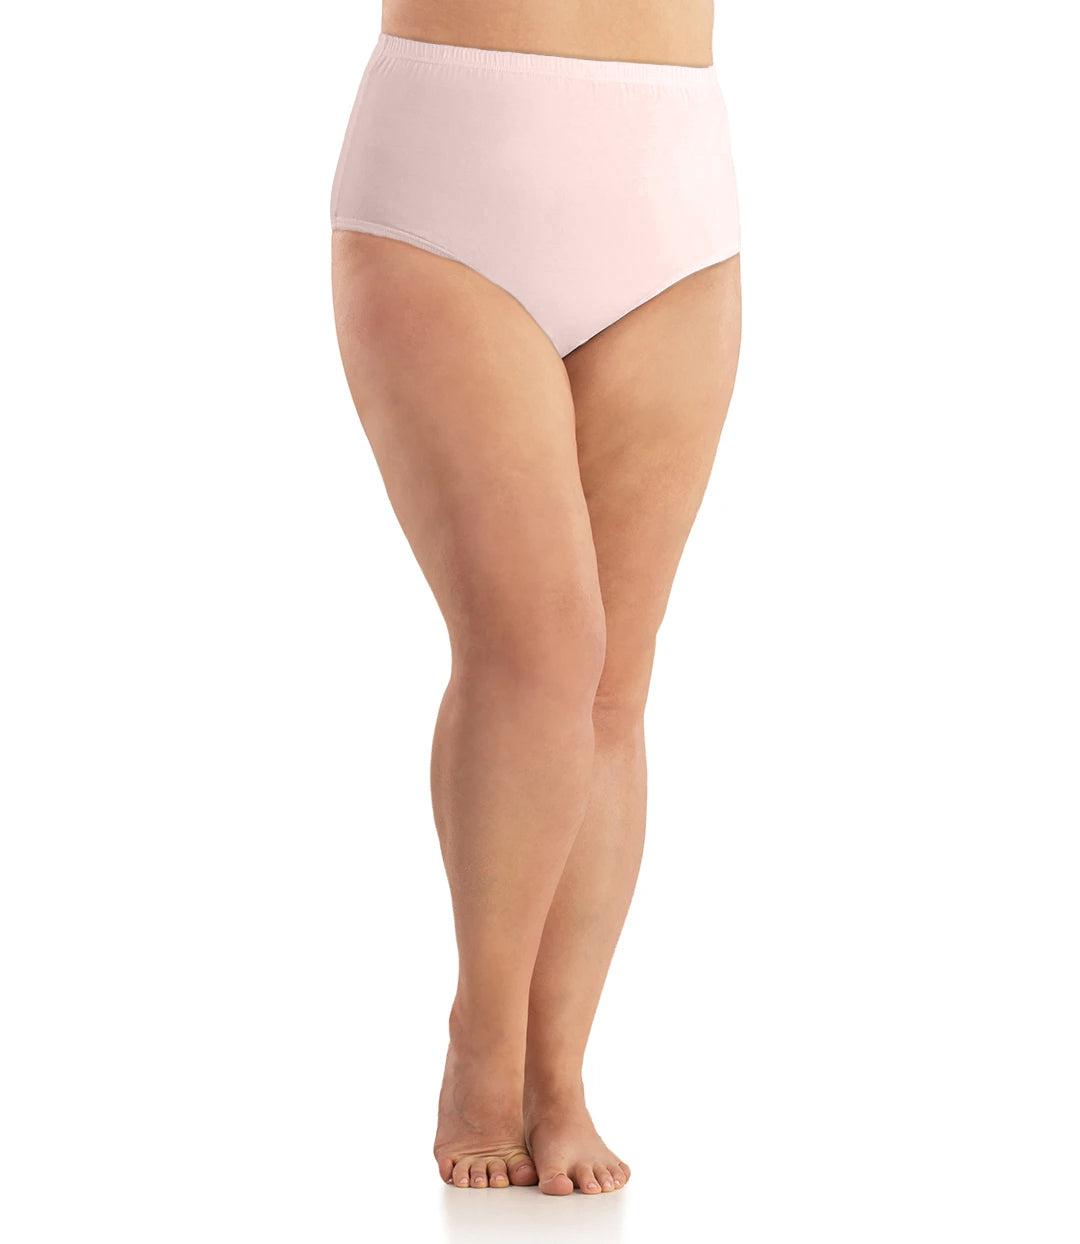 Cotton High-Cut Brief Plus Size Underwear Pink